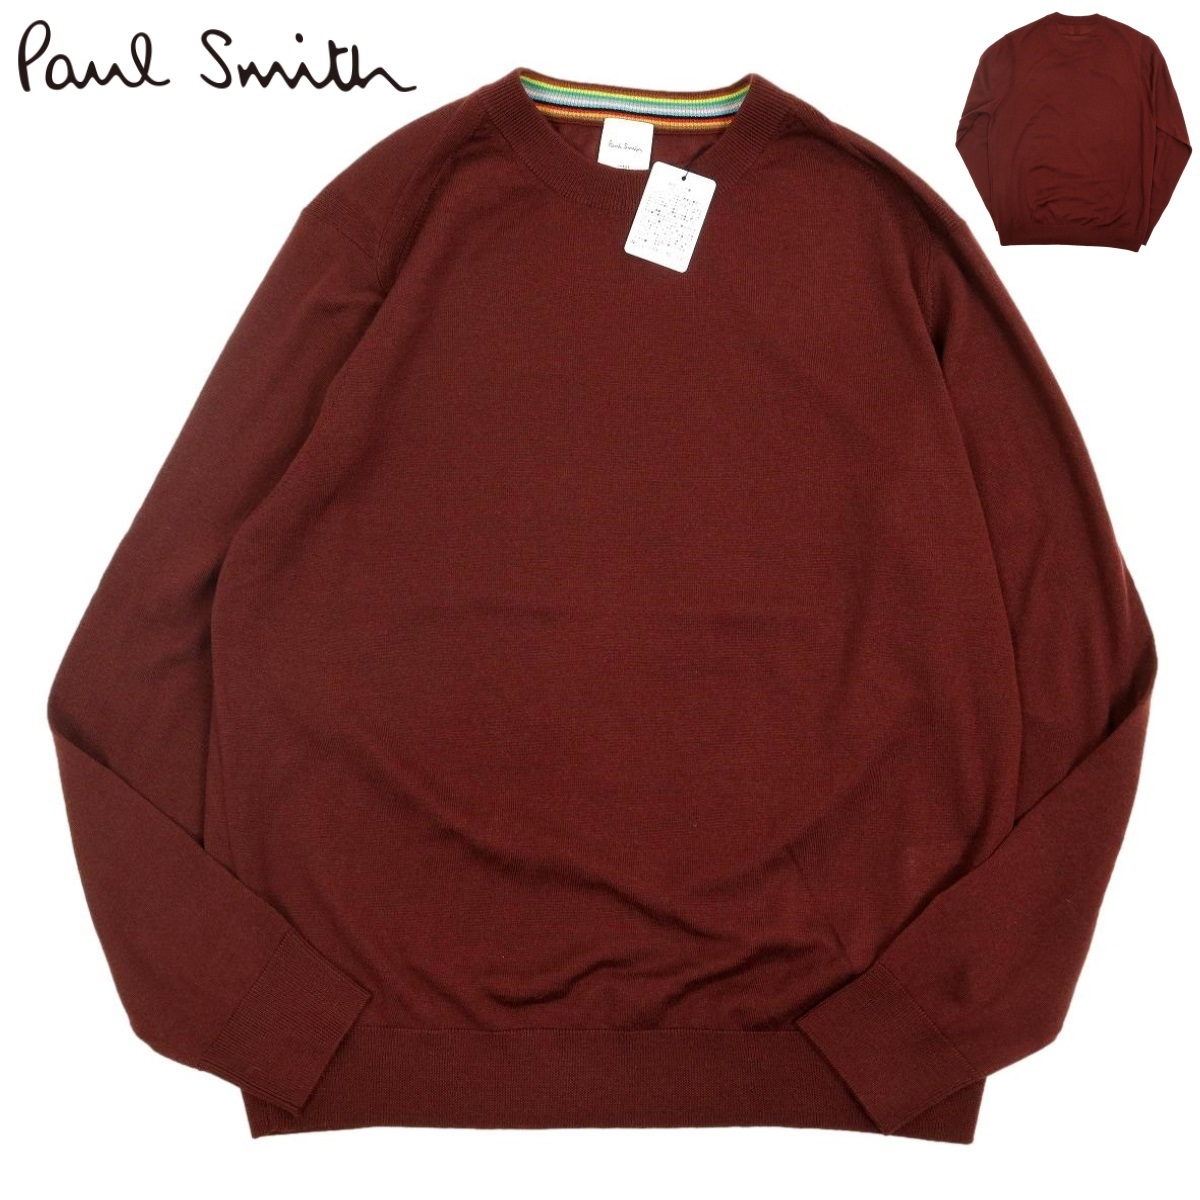 【B2599】【新品】【定価23,100円】Paul Smith ポールスミス セーター ファインゲージクルーネックニット 233450 サイズL